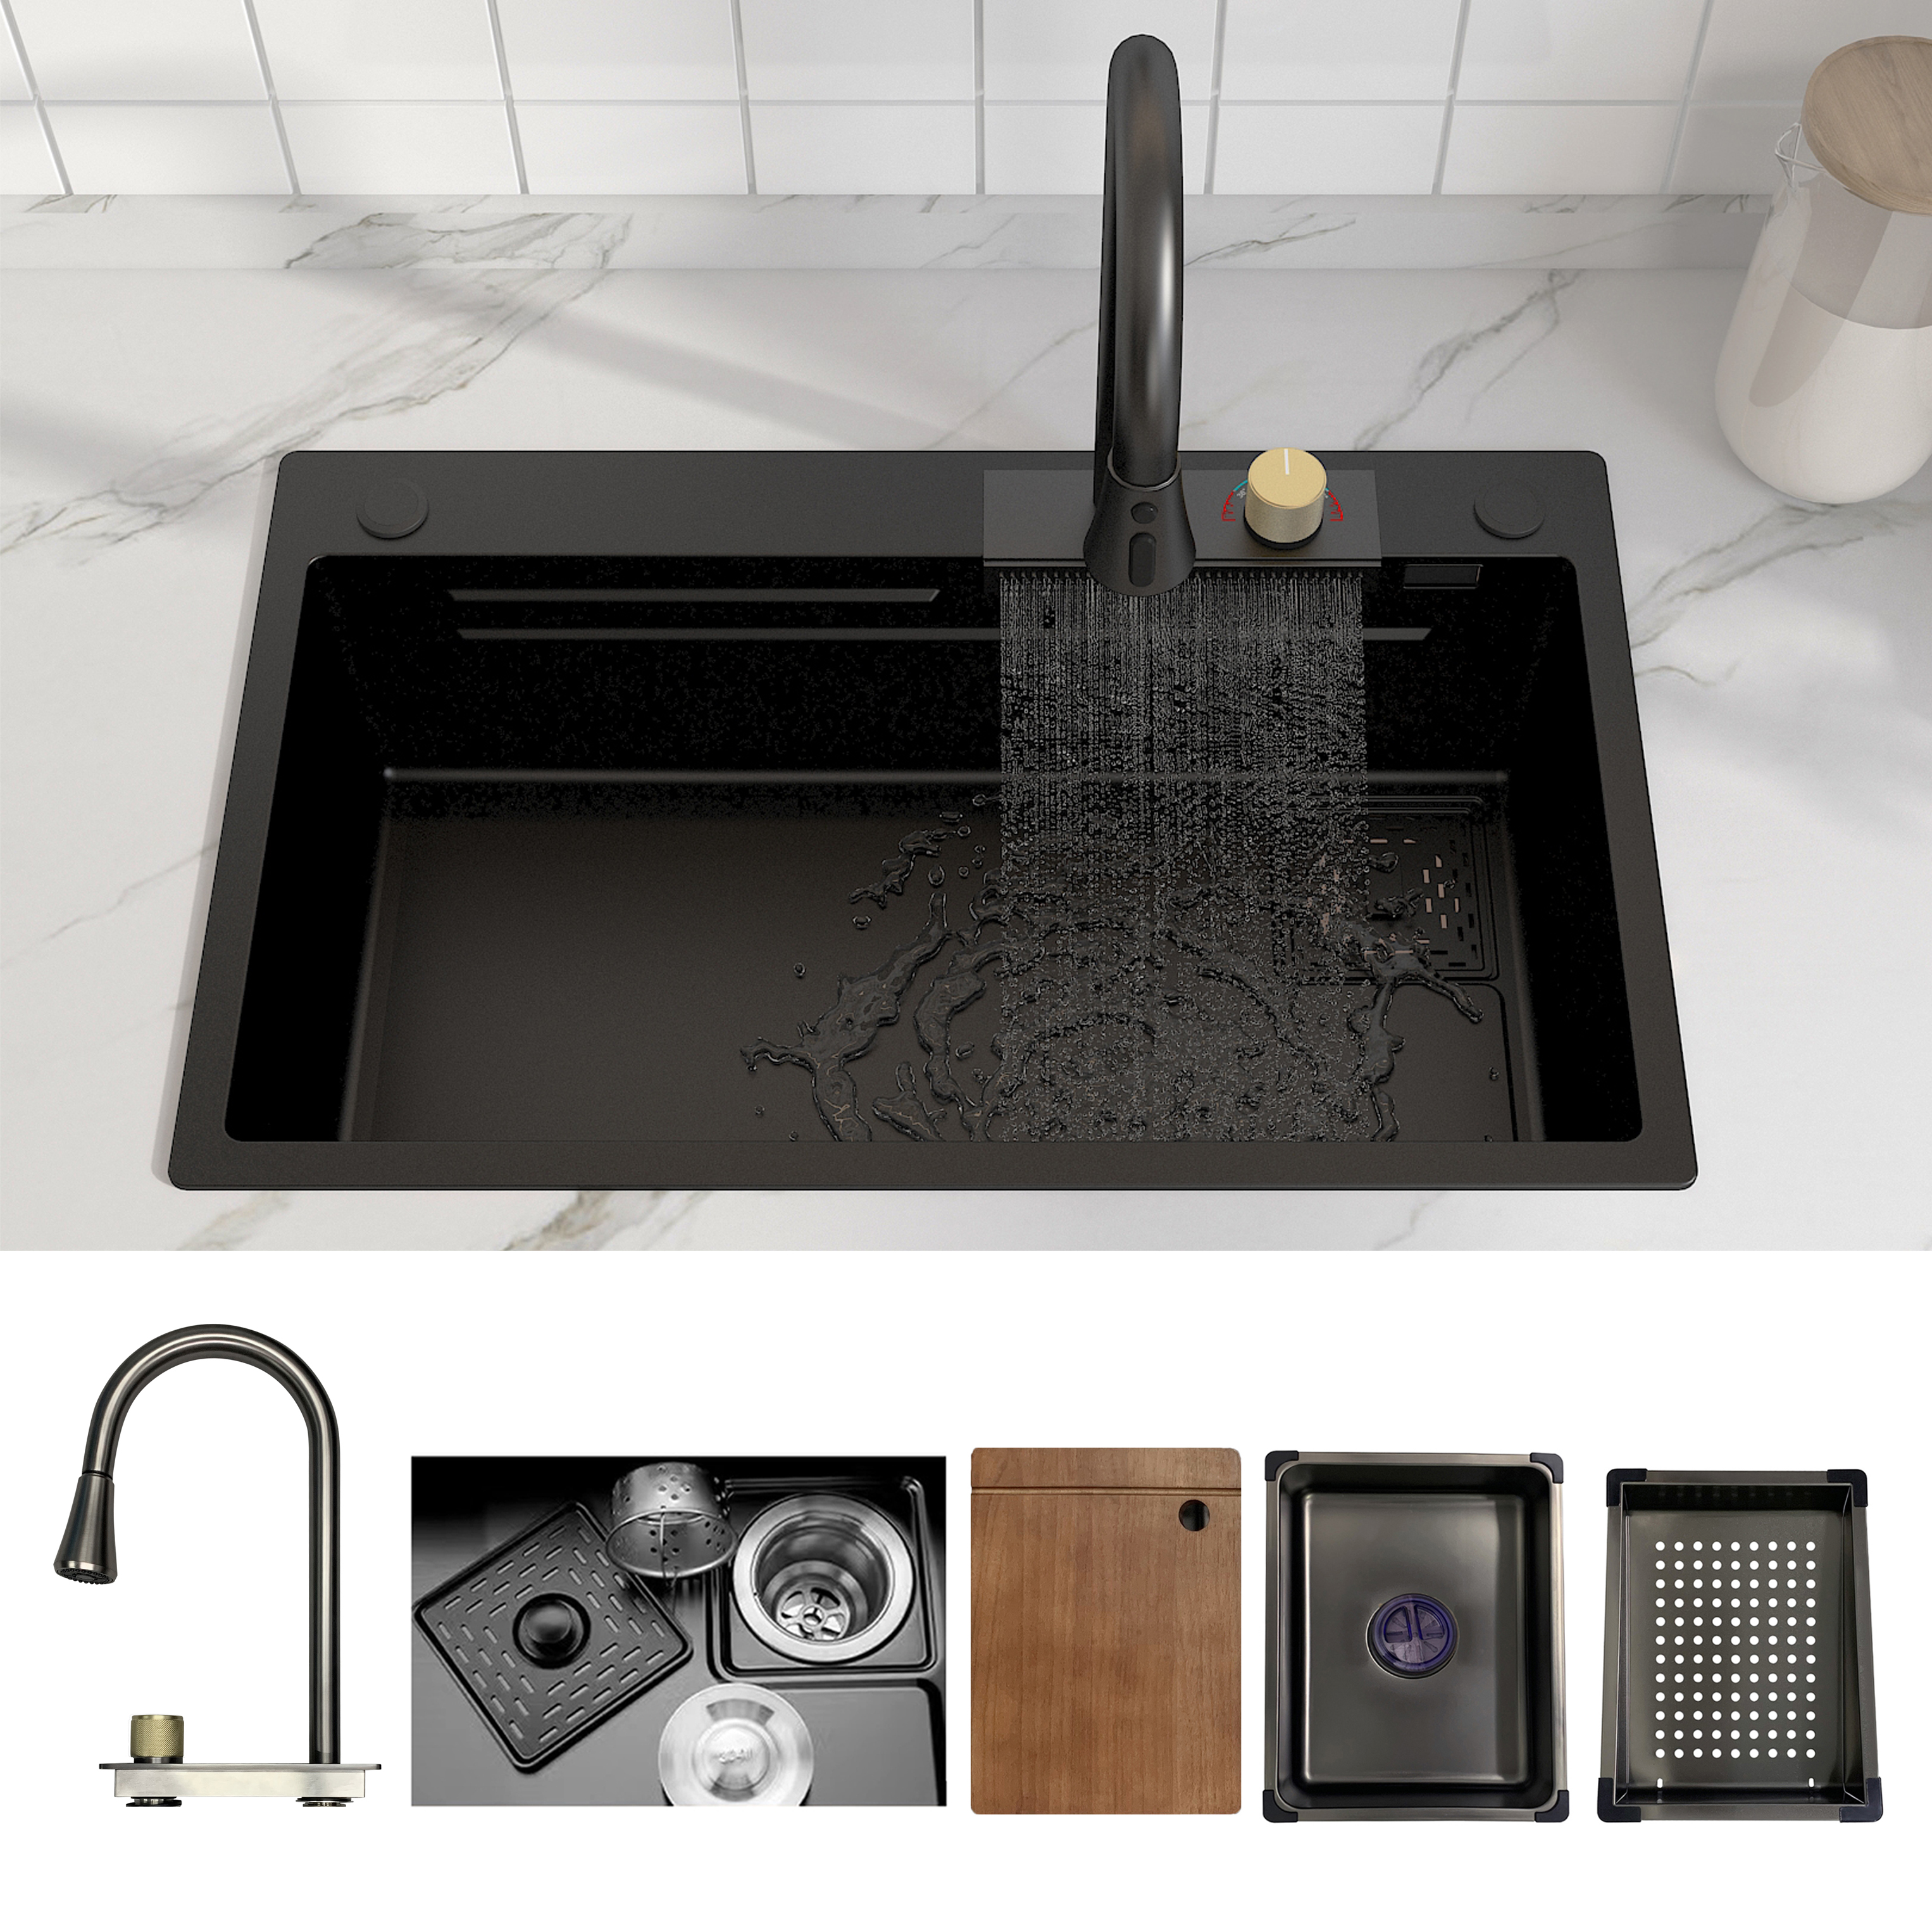 MEJE 30×18 Zoll Wasserfall-Arbeitsplatz-Küchenspüle, Edelstahl-Einzelbecken, herunterziehbares Wasserhahn-Set, schwarze Farbe